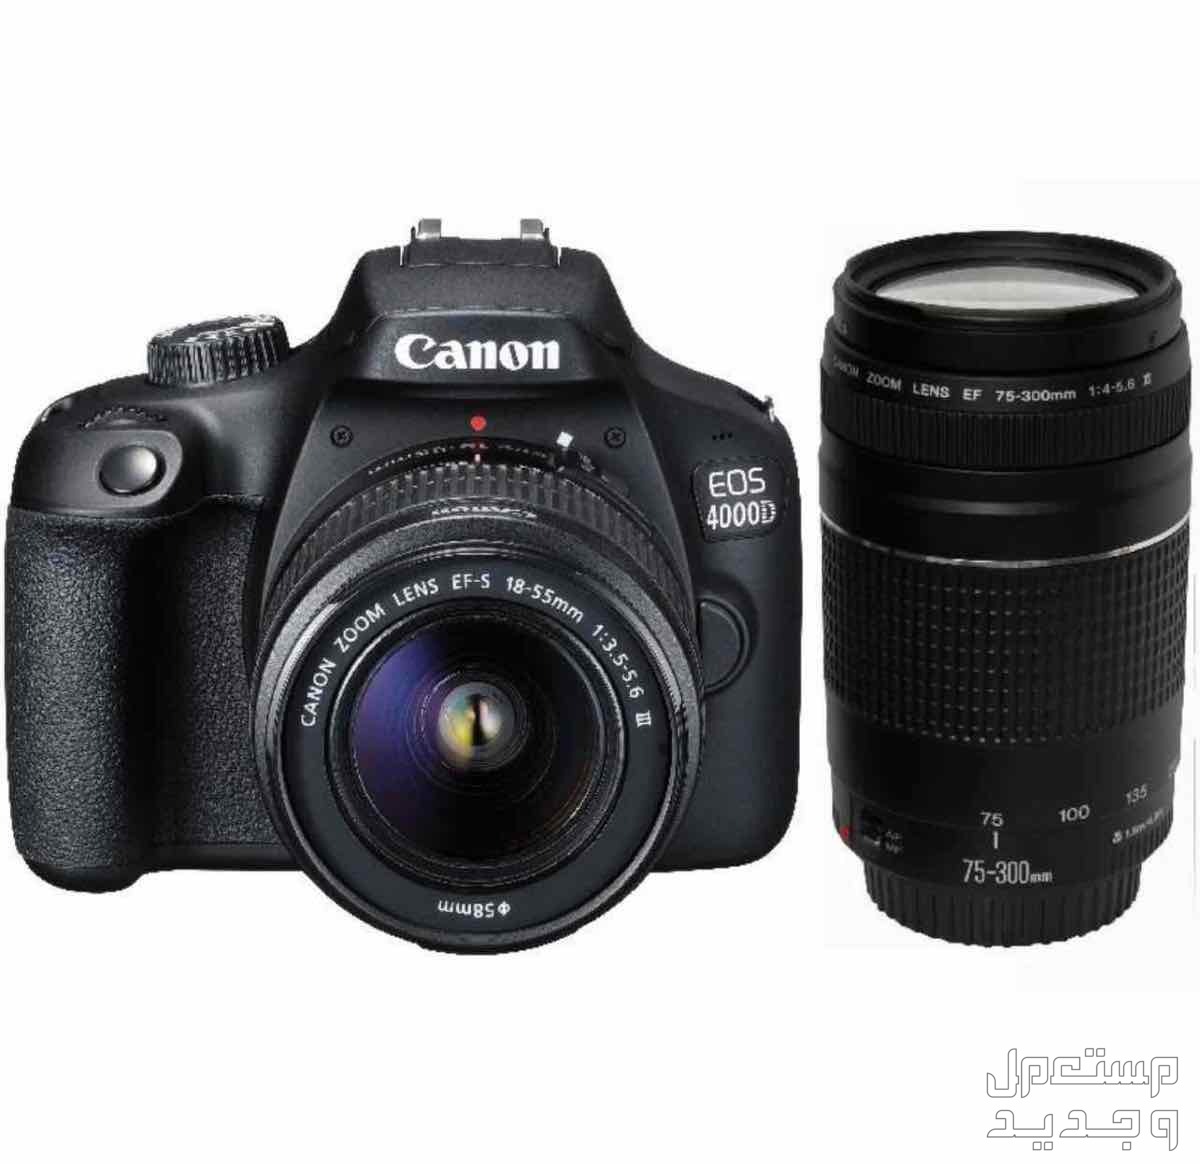 كاميرا Canon EOS 4000D  في جدة بسعر ألفين ريال سعودي